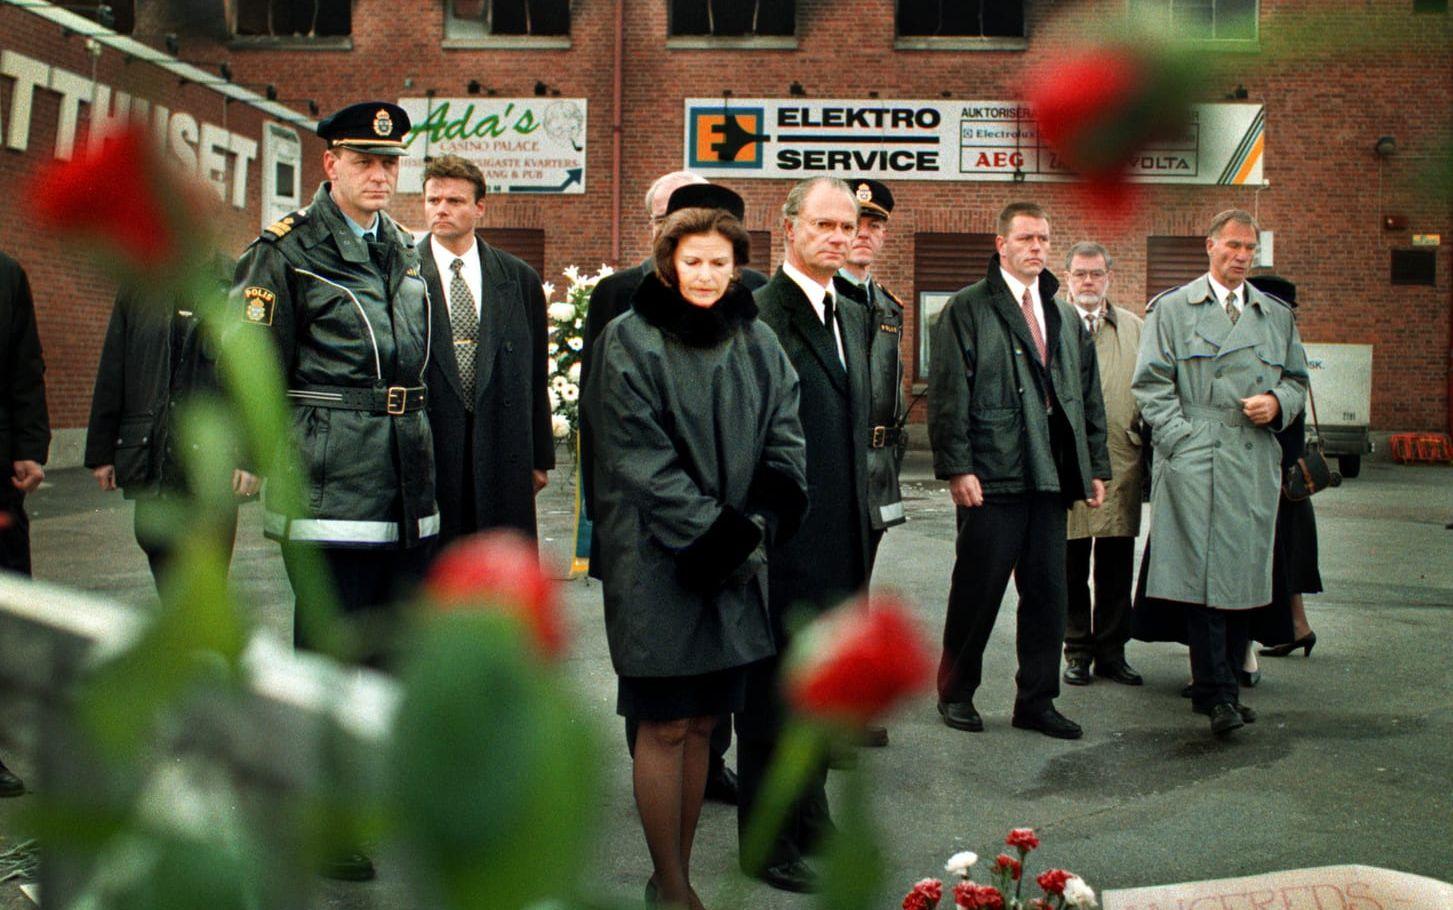 Natten mellan den 29 och 30 oktober 1998 omkom 63 i diskoteksbranden i Backa, Hisingen. I början av november samma år besökte kungen och drottningen bland annat brandplatsen och Sahlgrenska sjukhuset för att visa sitt deltagande. Arkivbild.